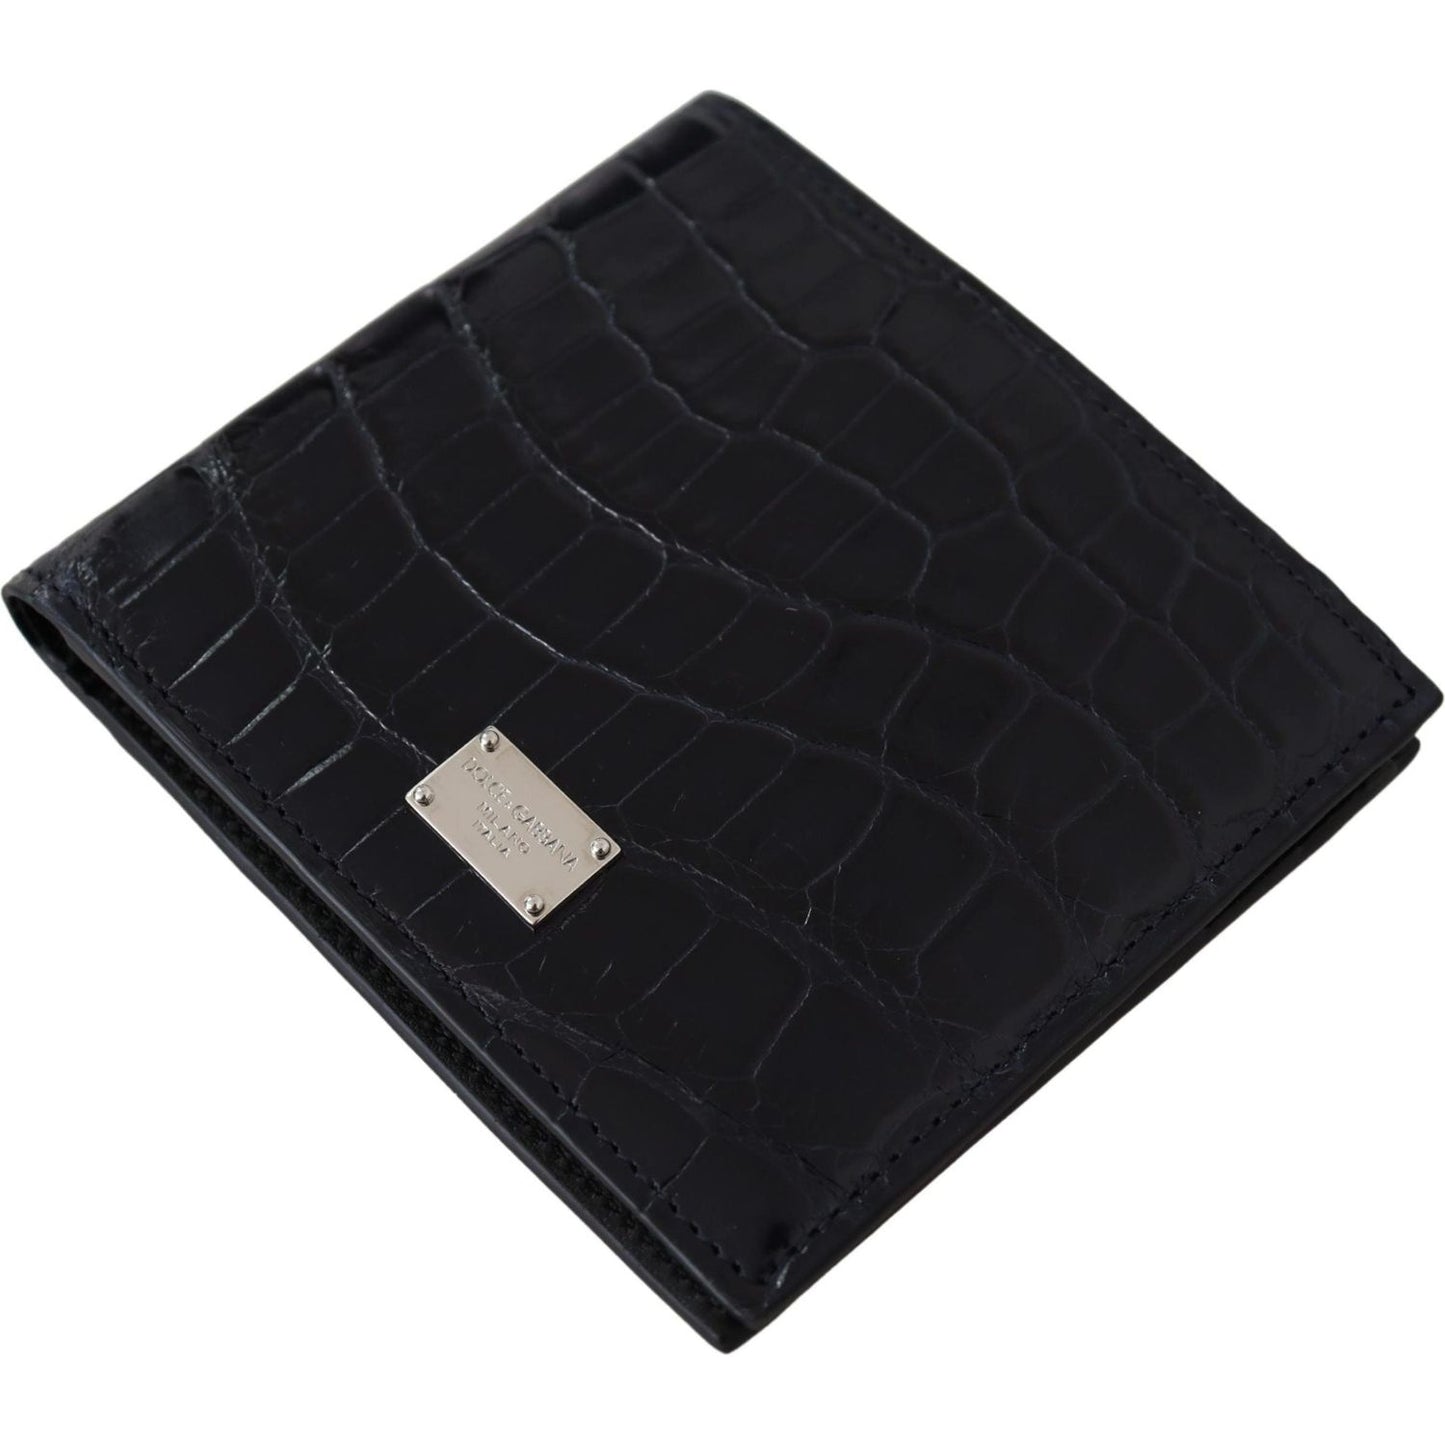 Dolce & Gabbana Elegant Exotic Leather Bifold Wallet black-bifold-card-holder-men-exotic-leather-wallet-1